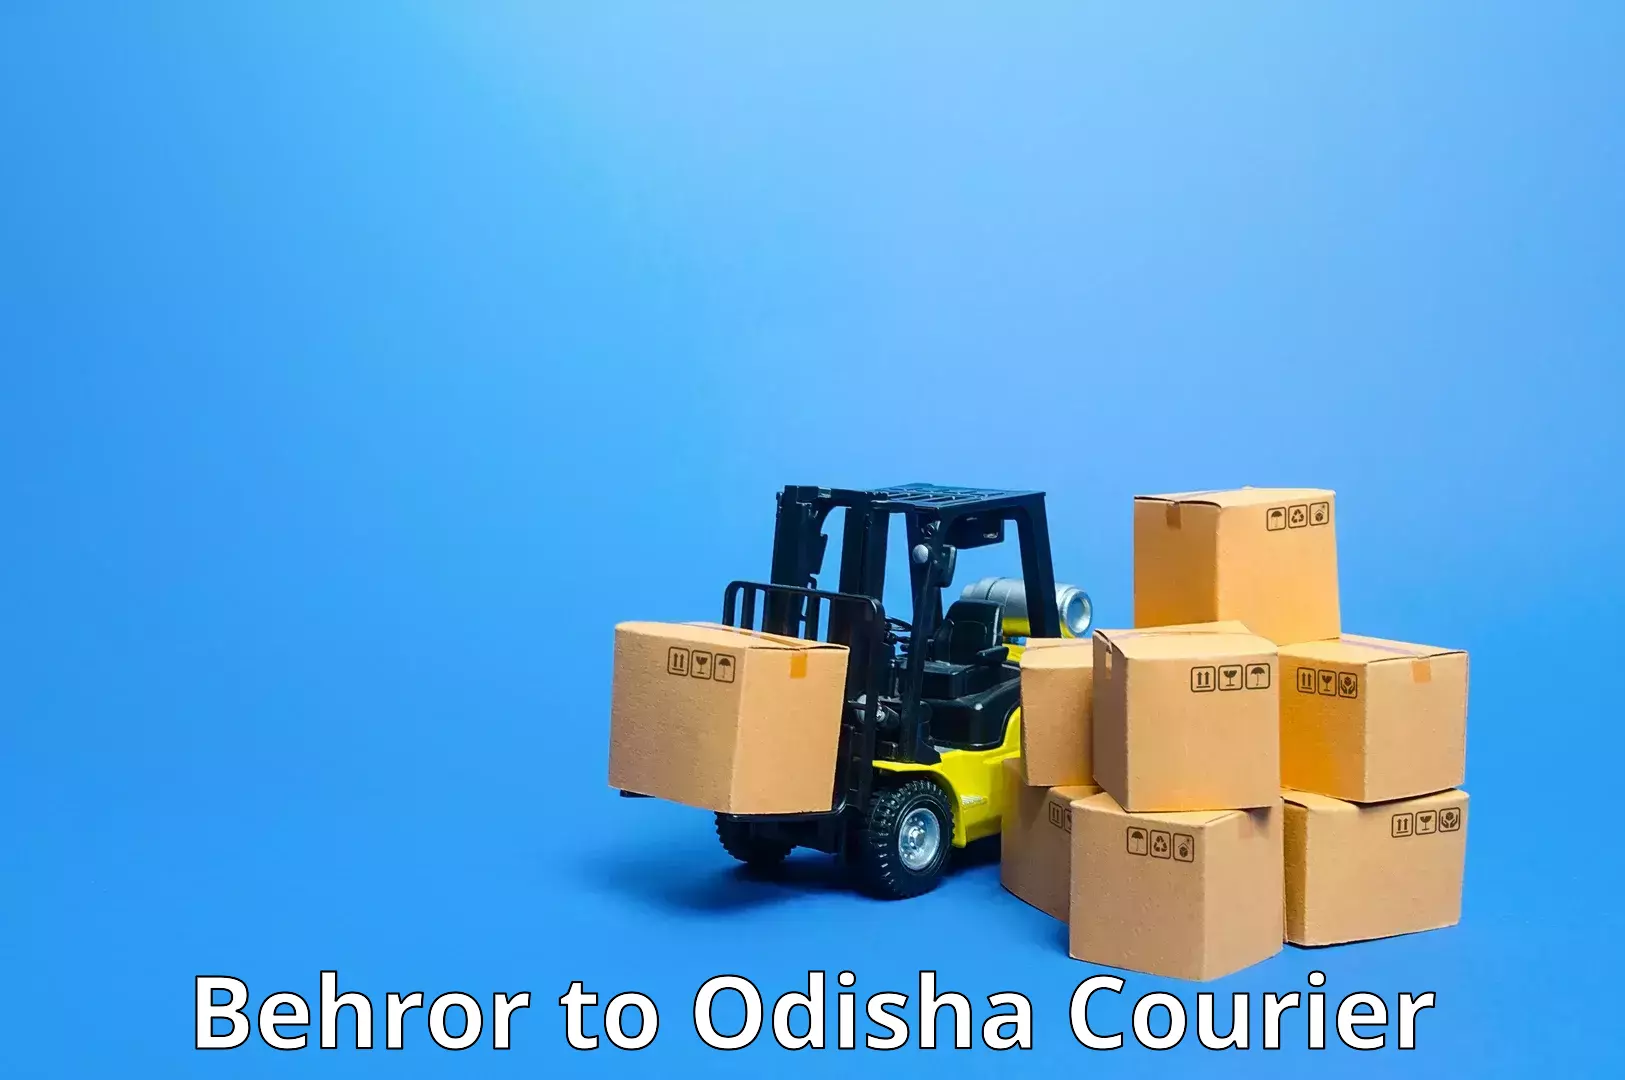 Modern courier technology in Behror to Muniguda